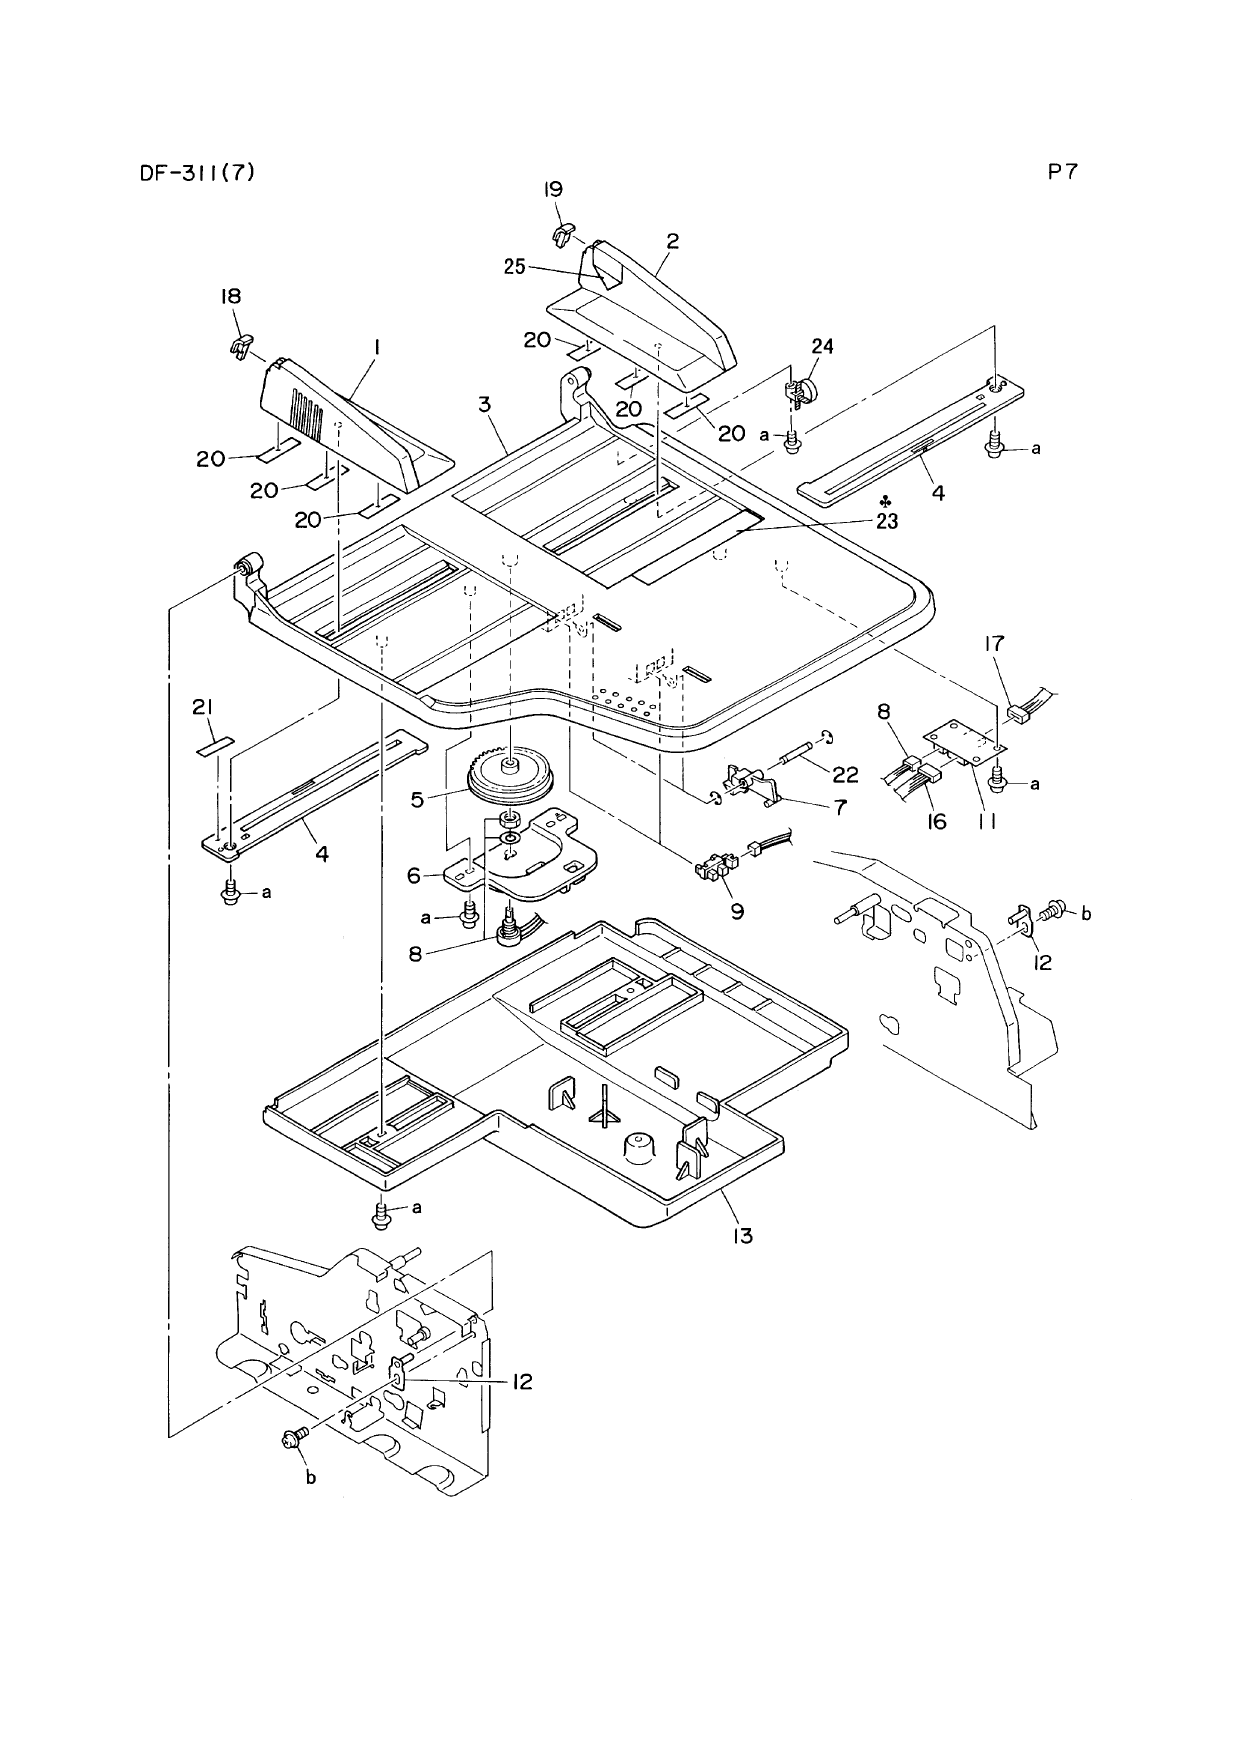 Konica-Minolta Options DF-311 Parts Manual-5